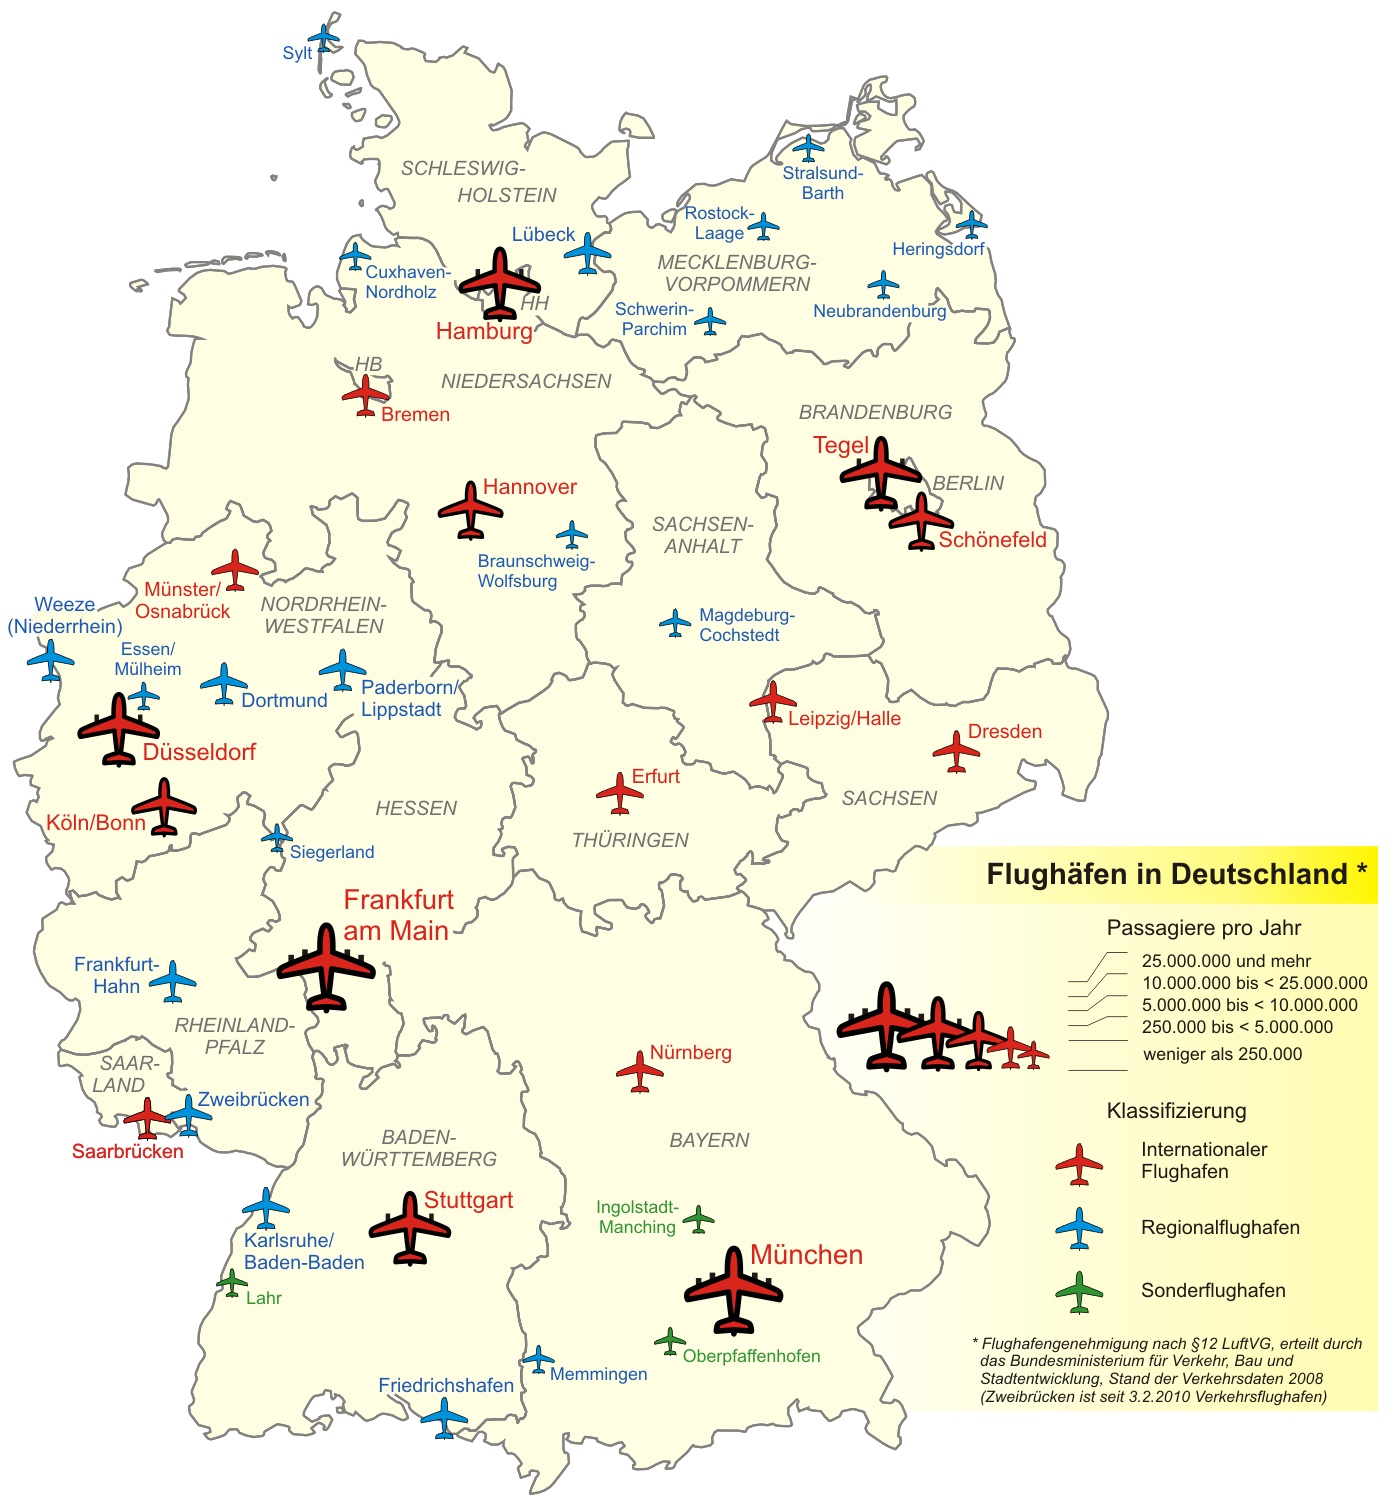 Aeropuertos en Alemania 2008